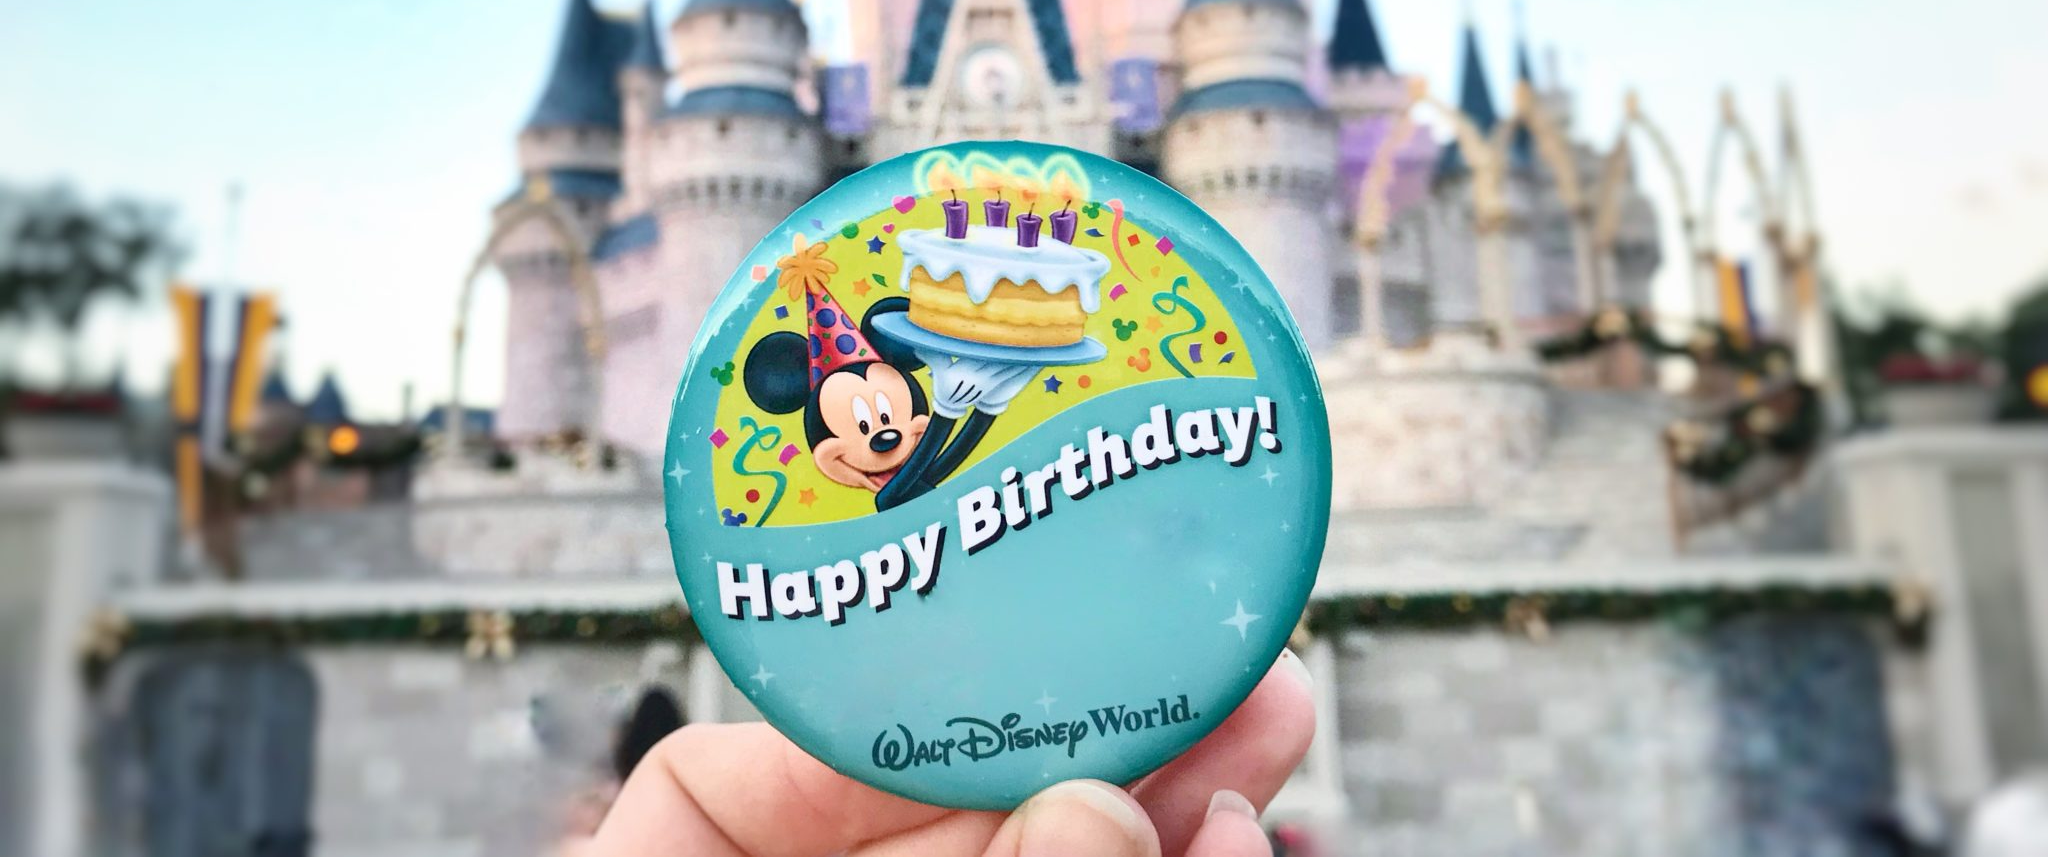 Er Disney gratis på bursdagen din?